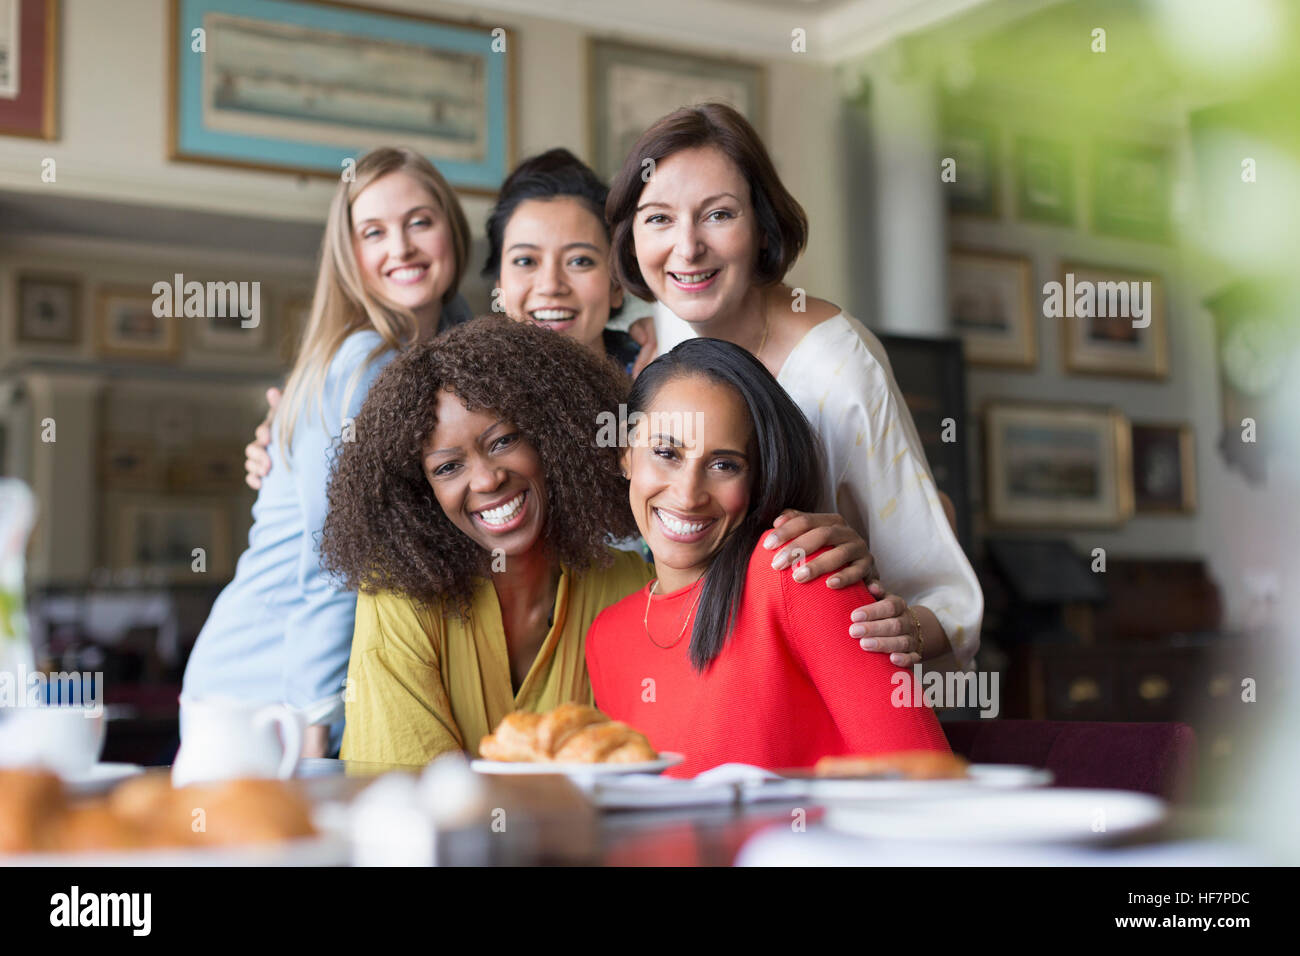 Portrait smiling women friends dîner au restaurant table Banque D'Images